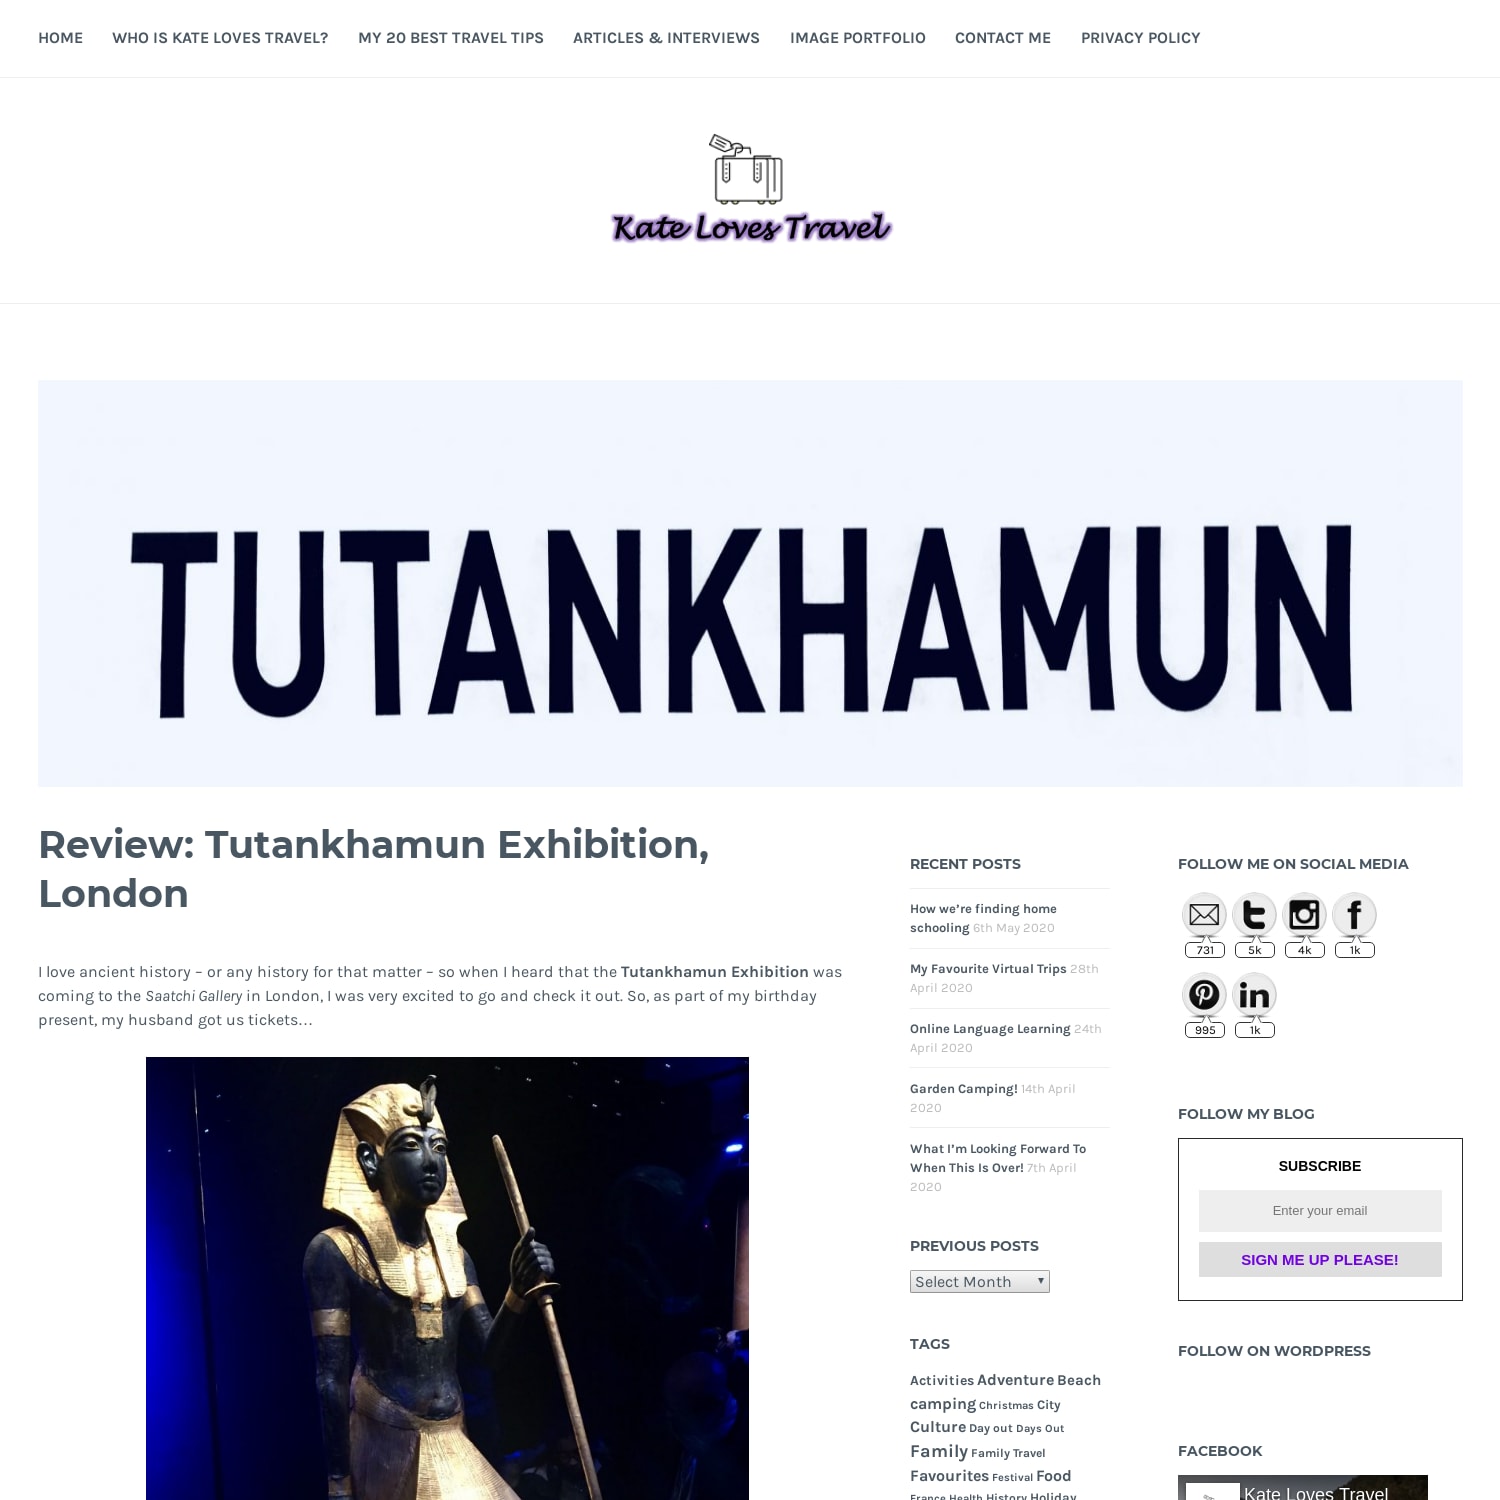 Review: Tutankhamun Exhibition, London